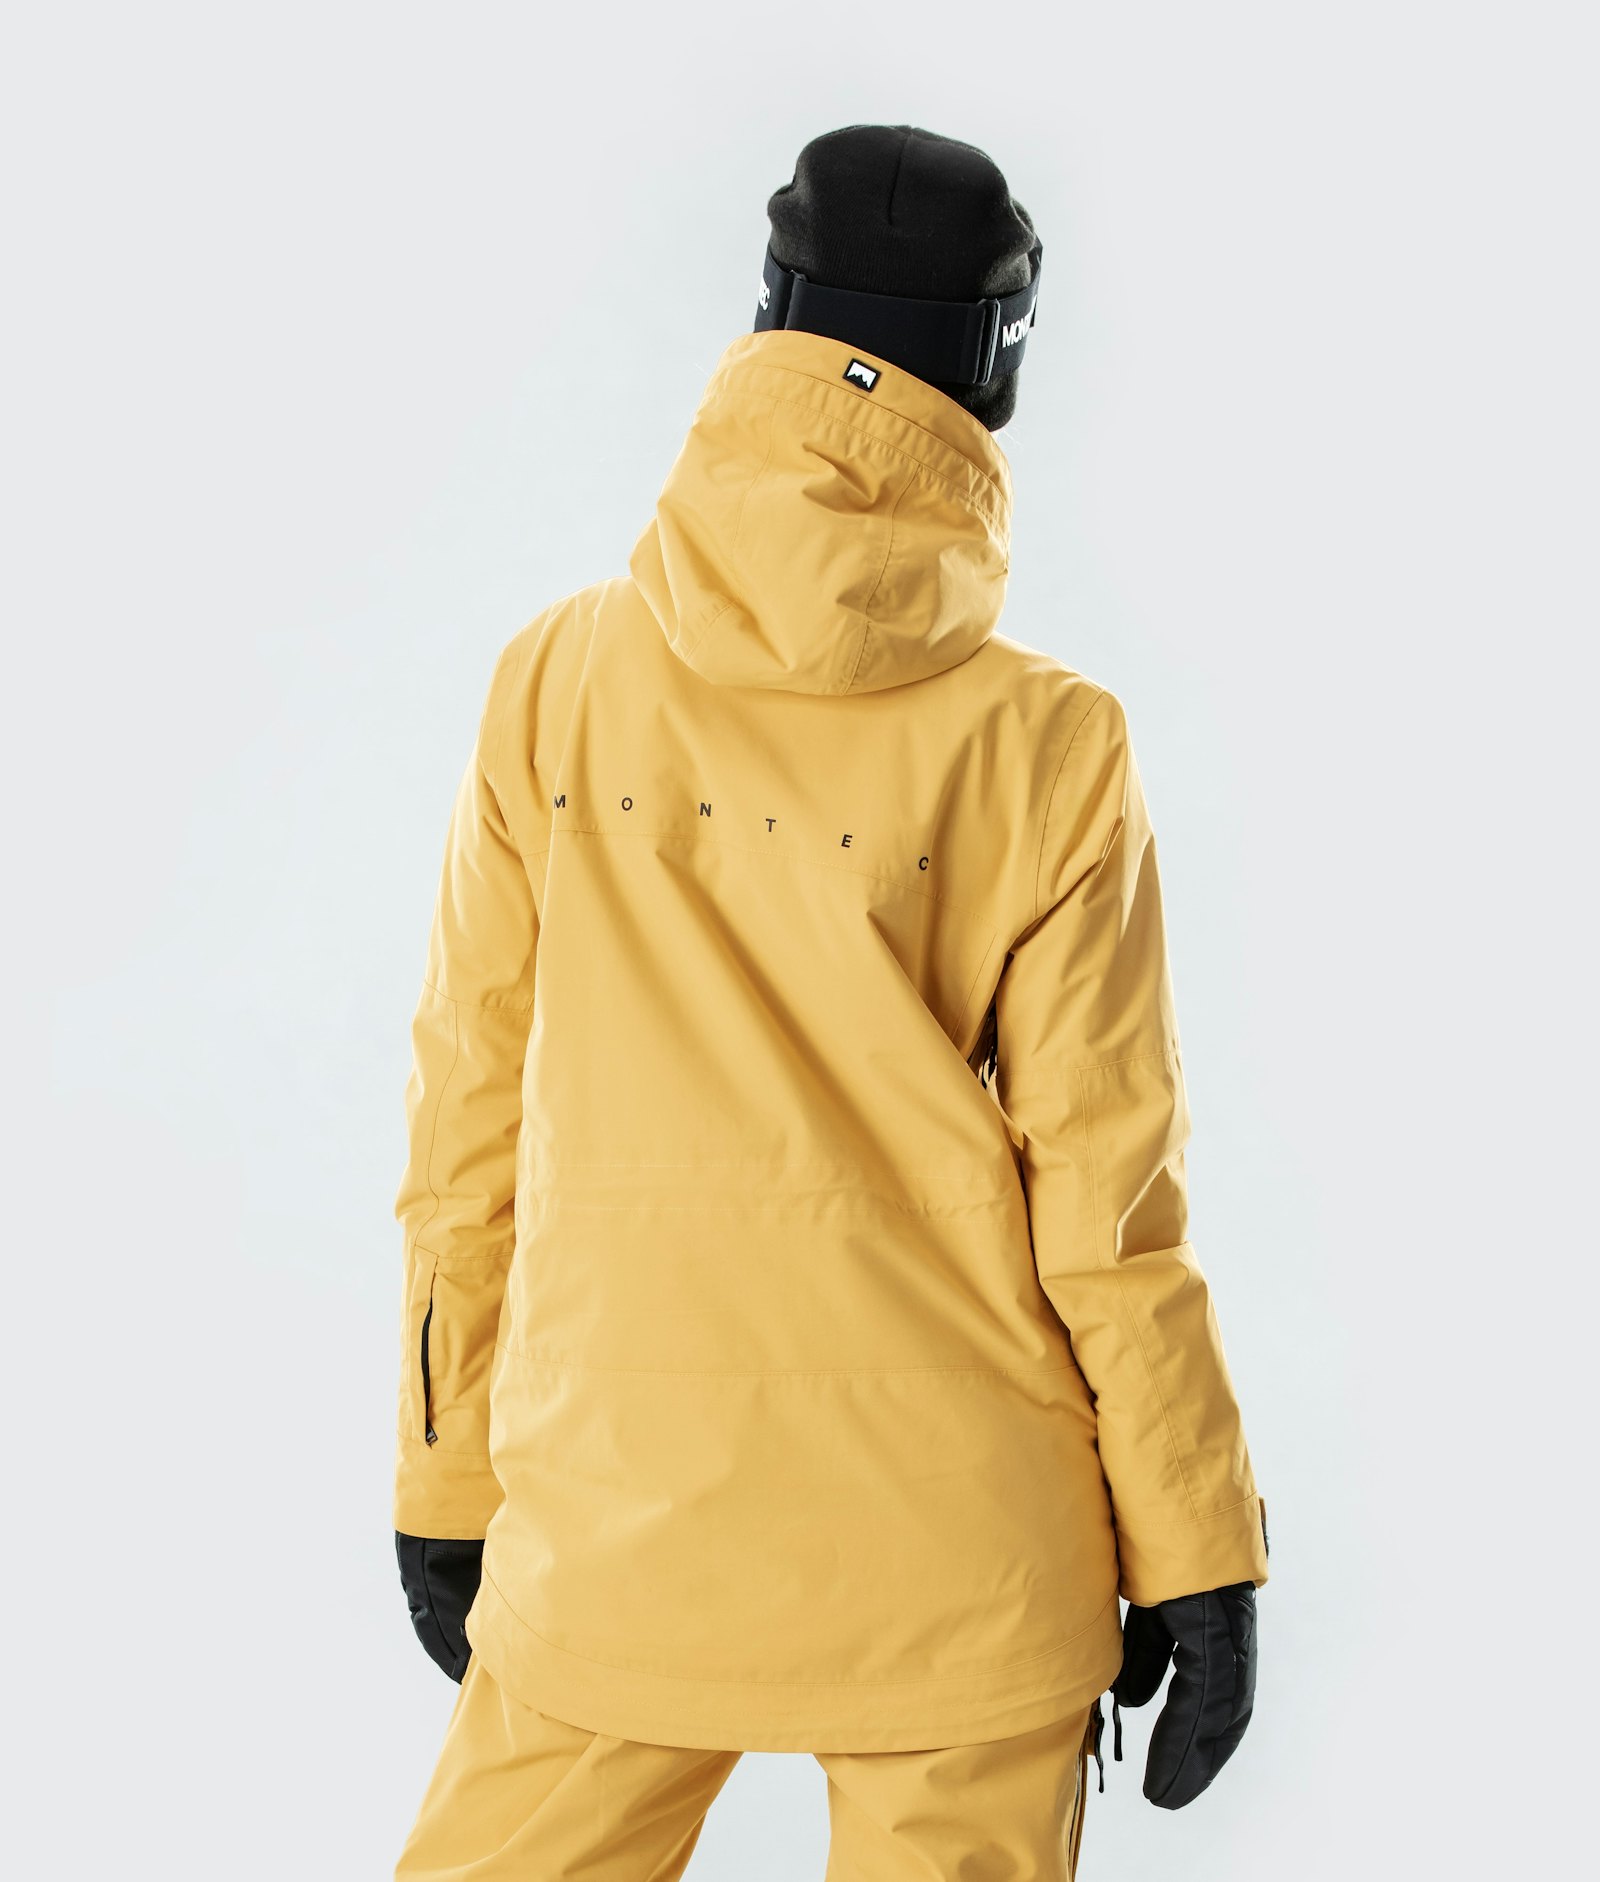 Roc W Ski Jacket Women Yellow